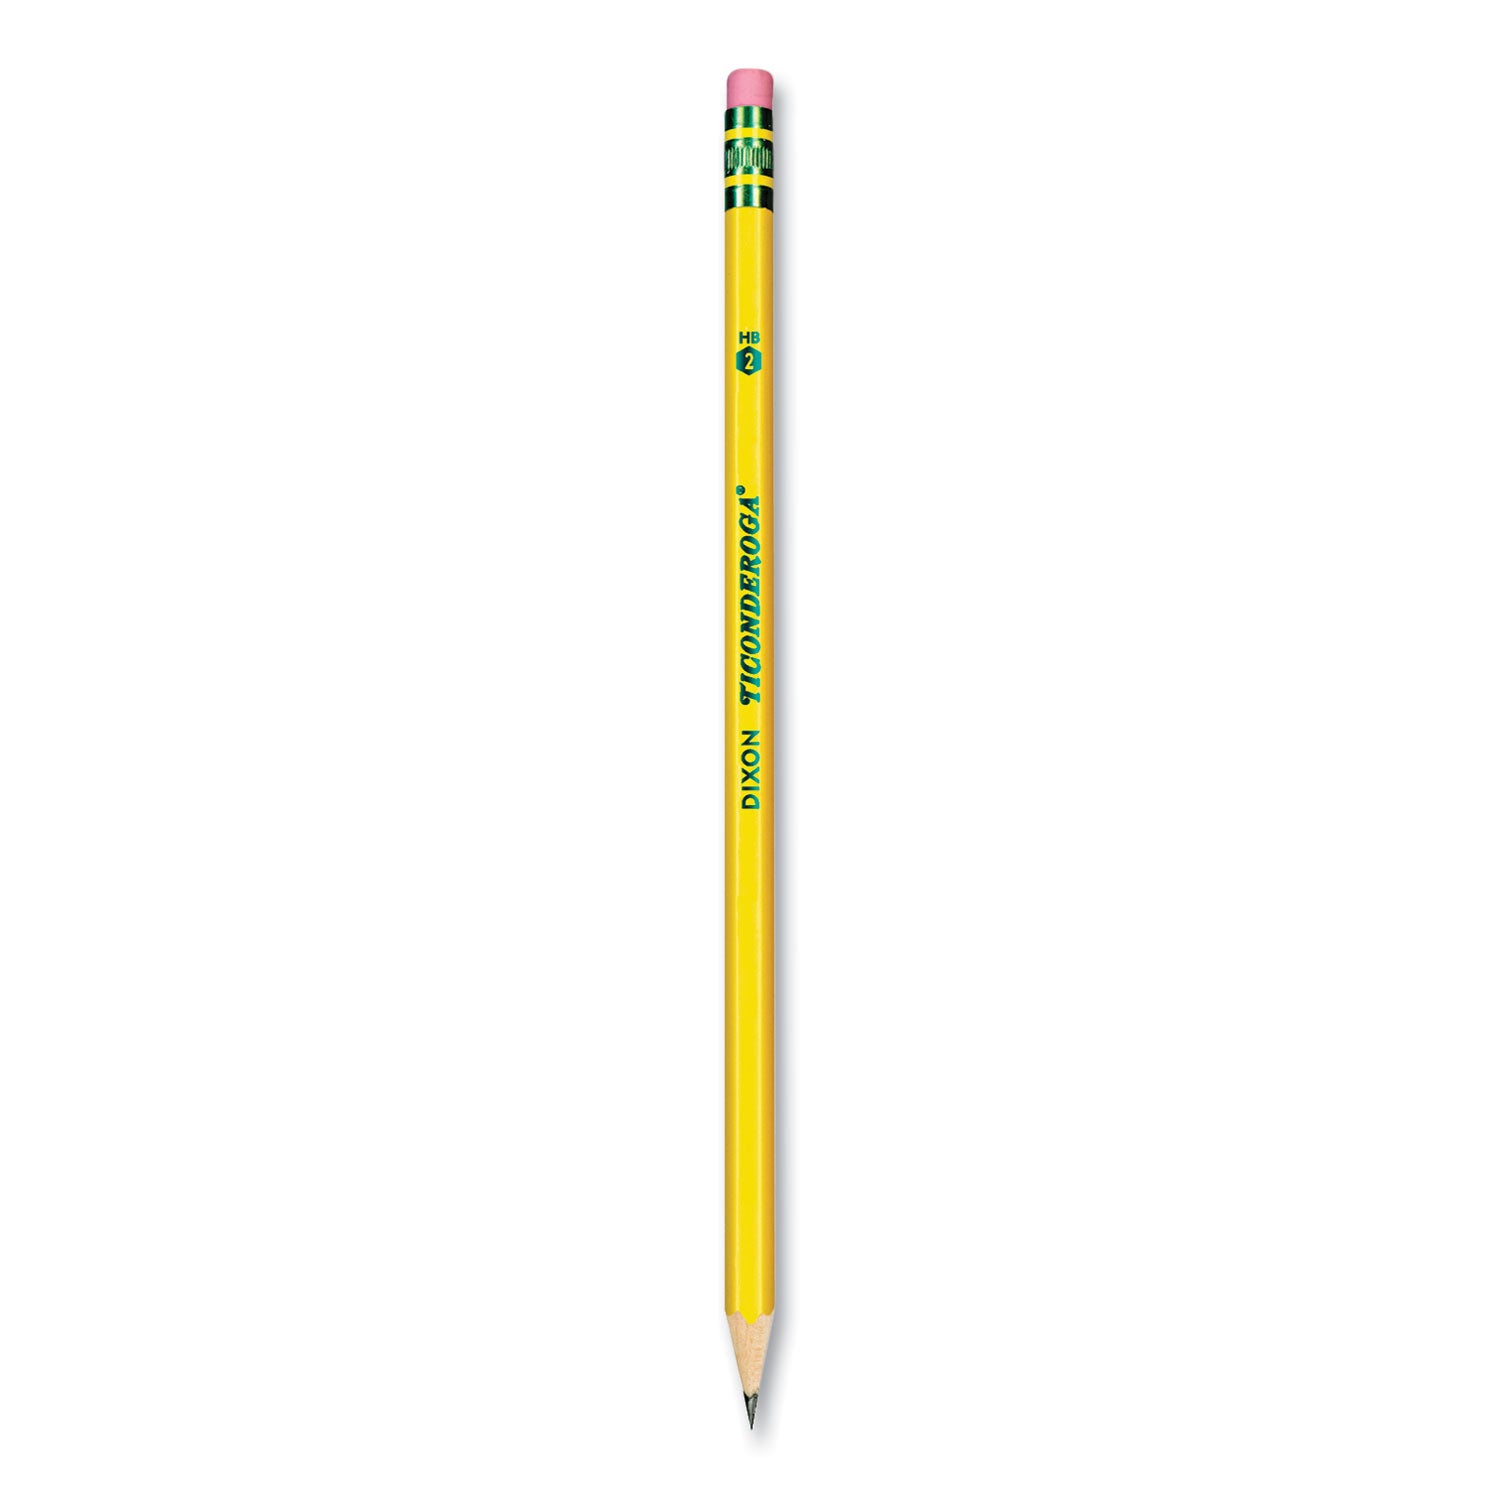 Pre-Sharpened Pencil, HB (#2), Black Lead, Yellow Barrel, Dozen - 